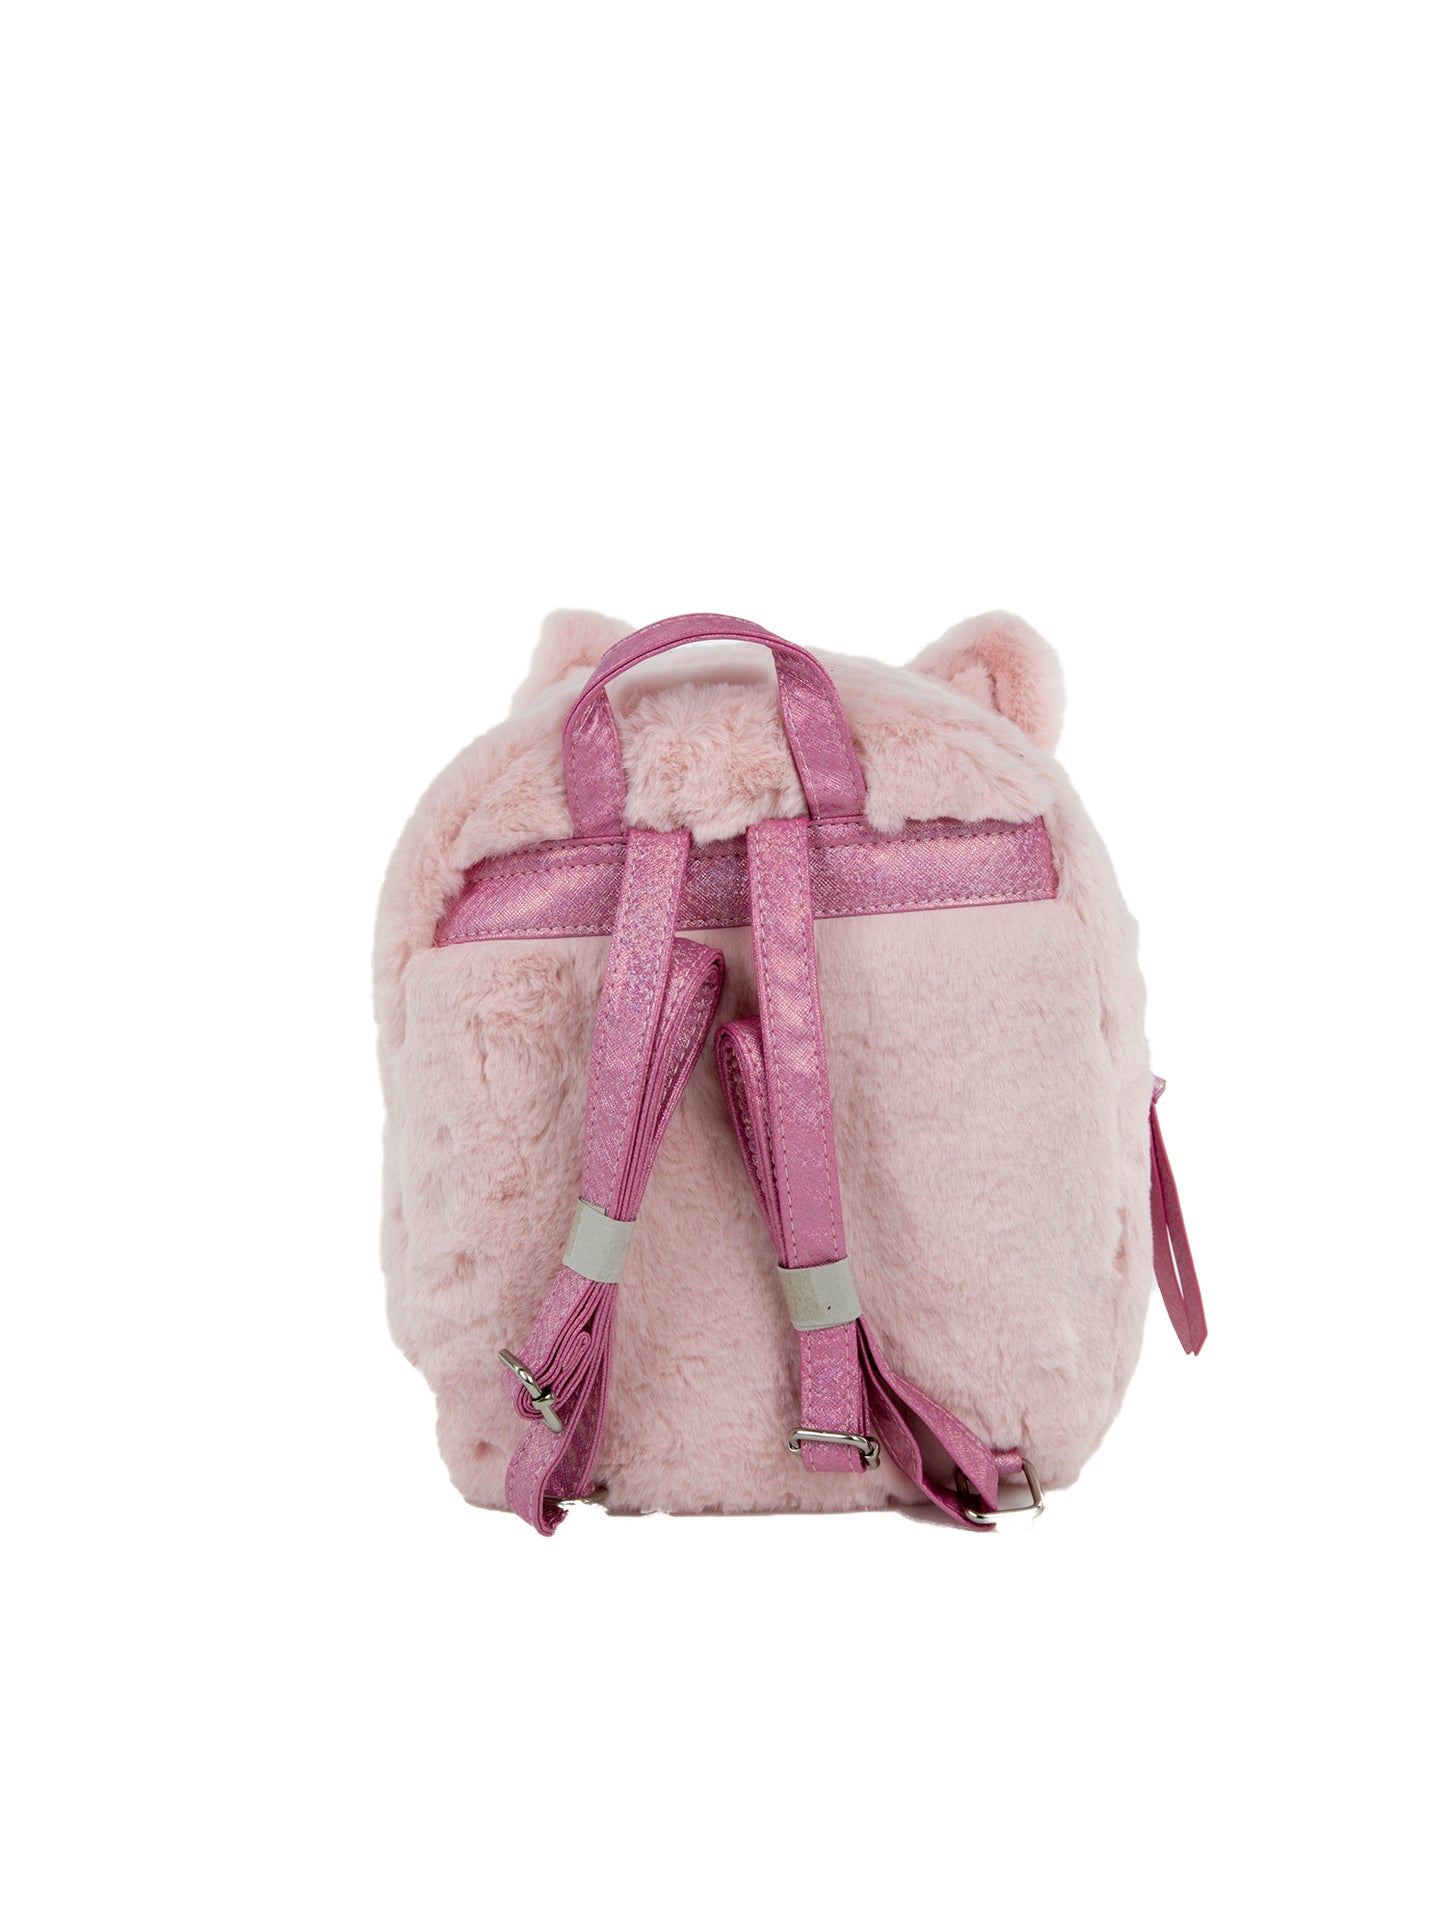 Giselle Kitty Backpack - Under1Sky